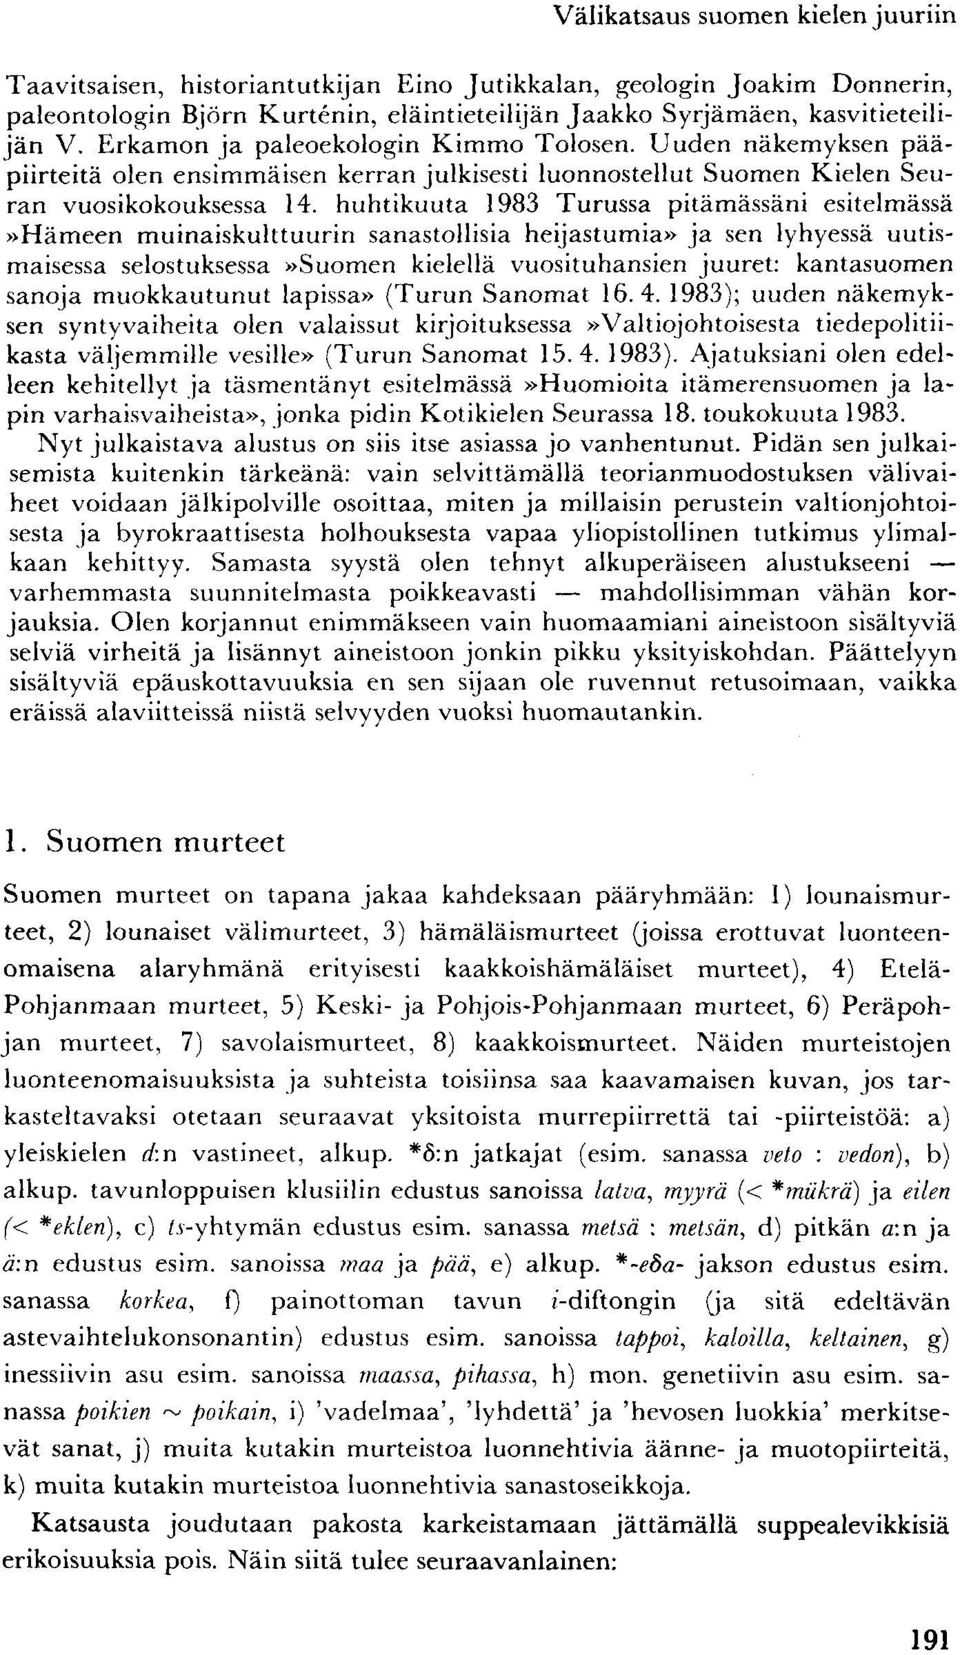 huhtikuuta 1983 Turussa pitämässäni esitelmässä»hämeen muinaiskulttuurin sanastollisia heijastumia» ja sen lyhyessä uutismaisessa selostuksessa»suomen kielellä vuosituhansien juuret: kantasuomen